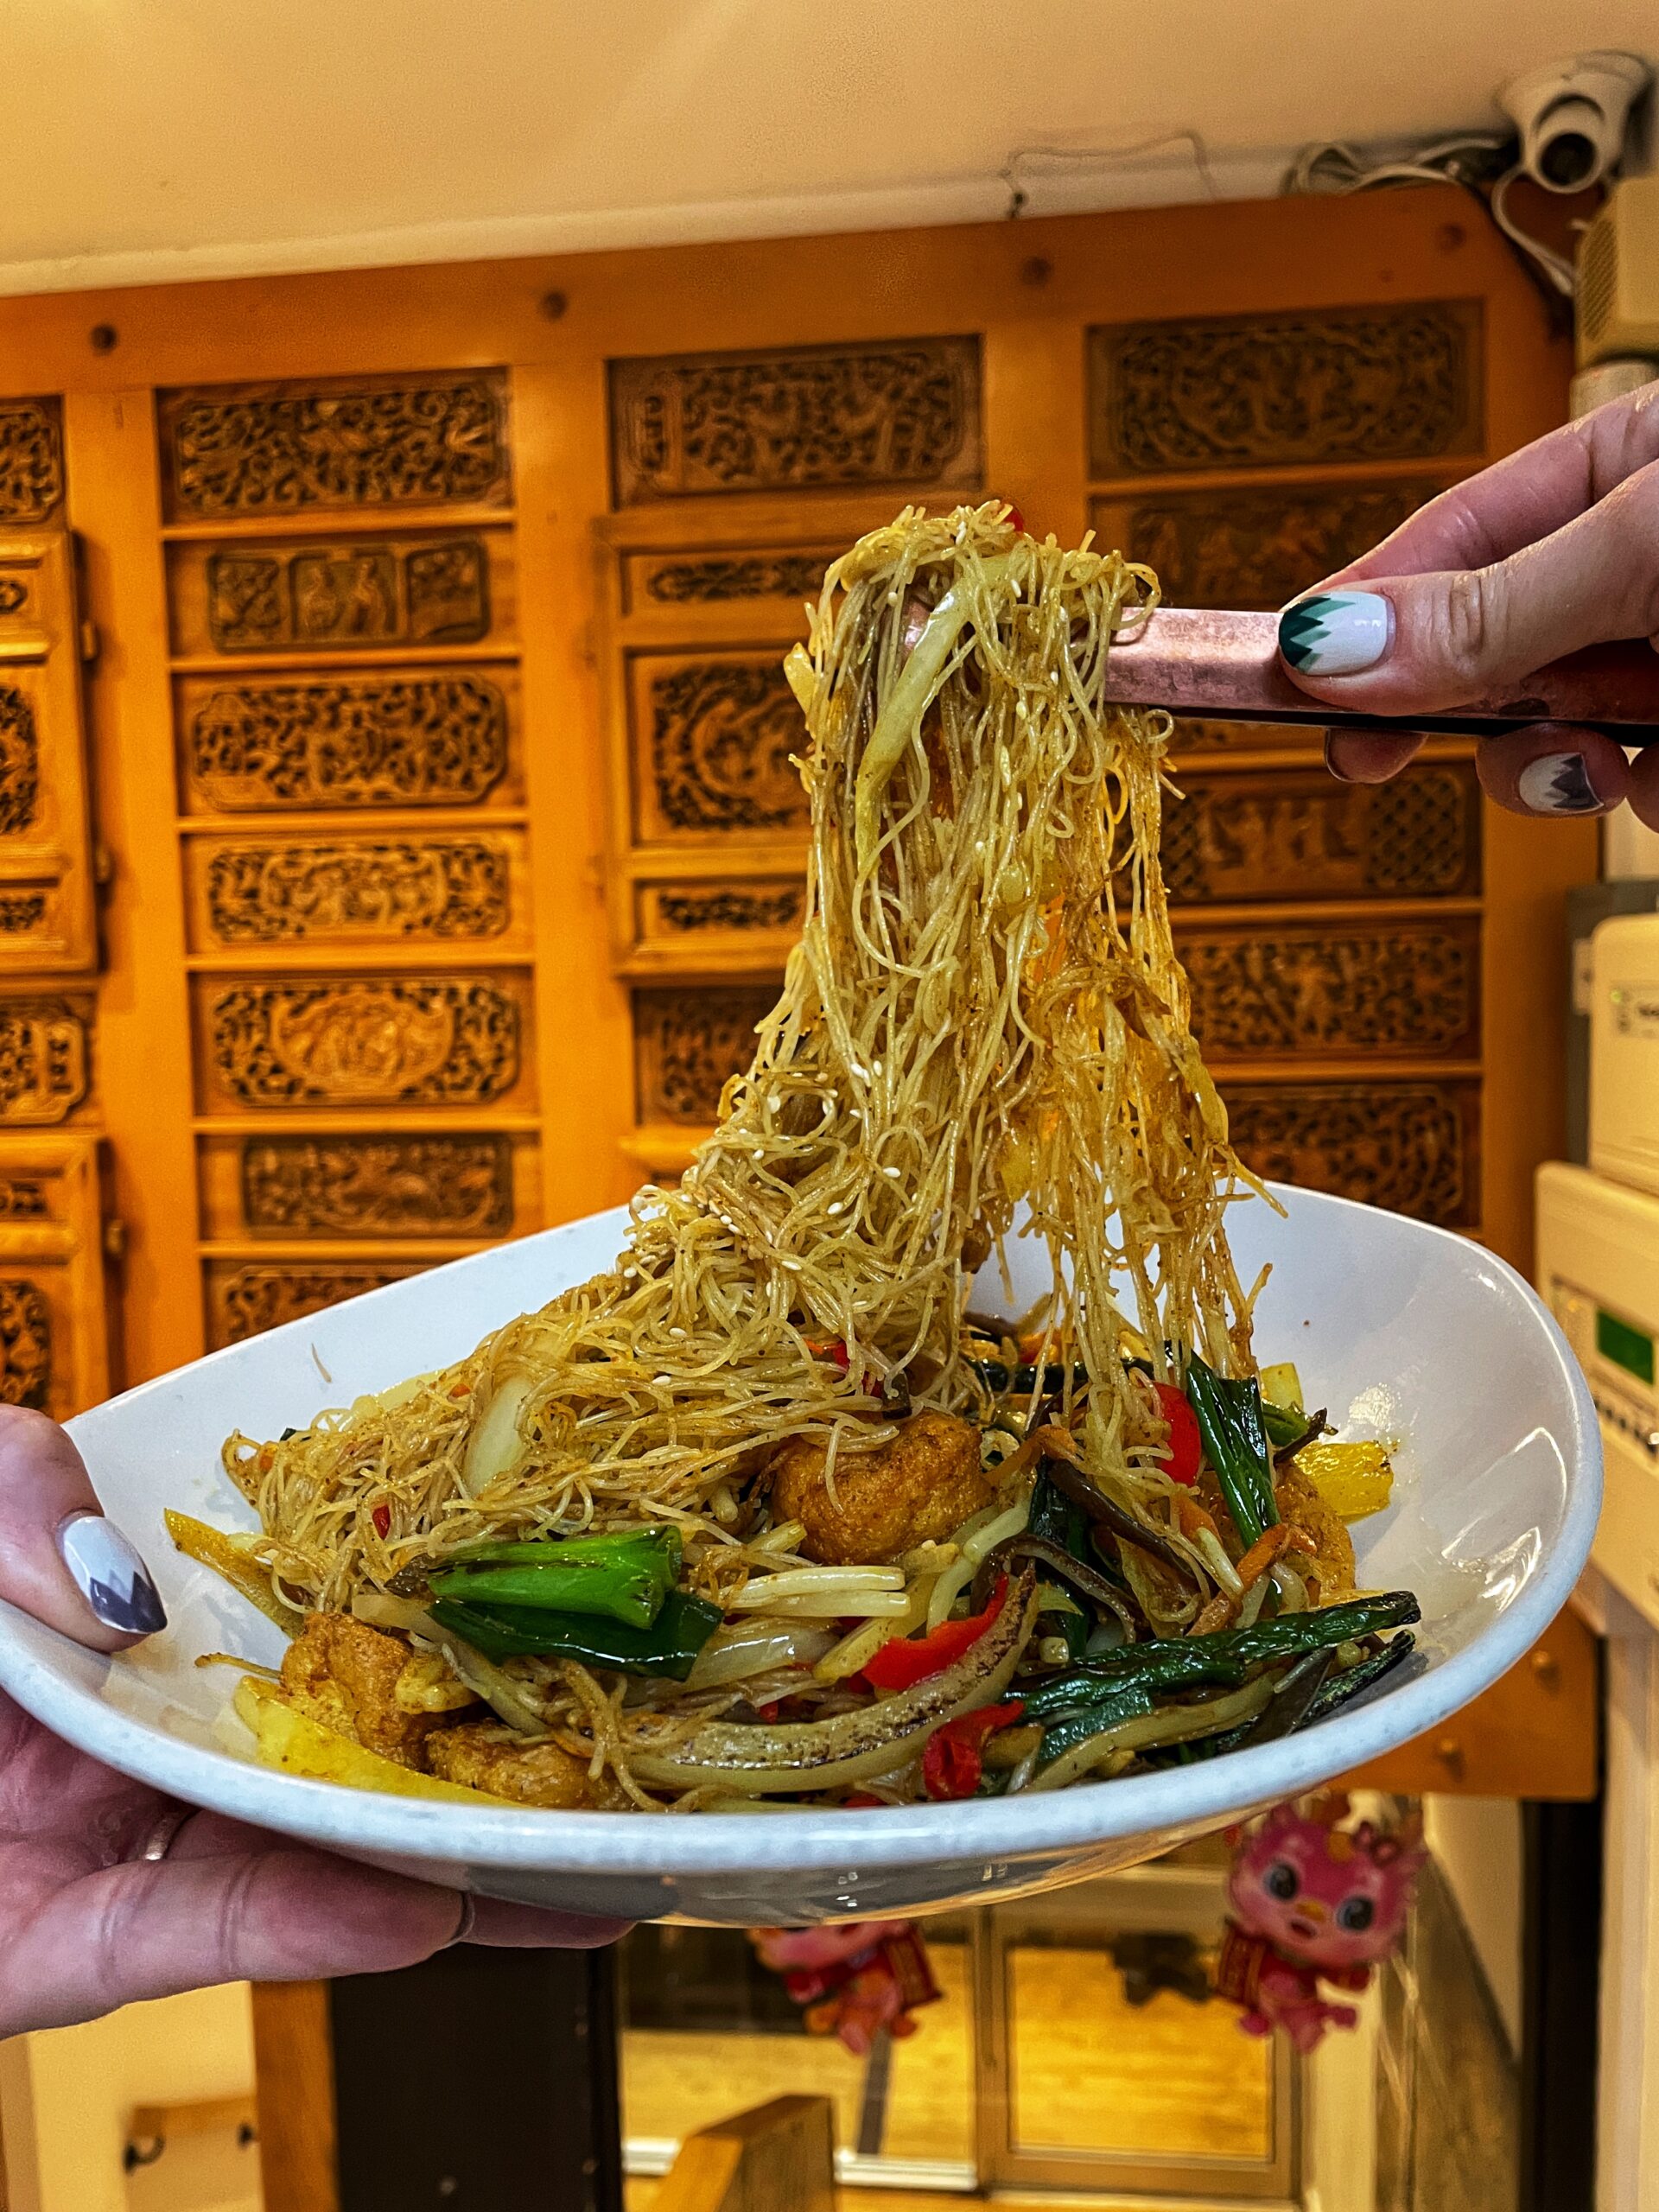 Singapore style vermicelli noodles - massive